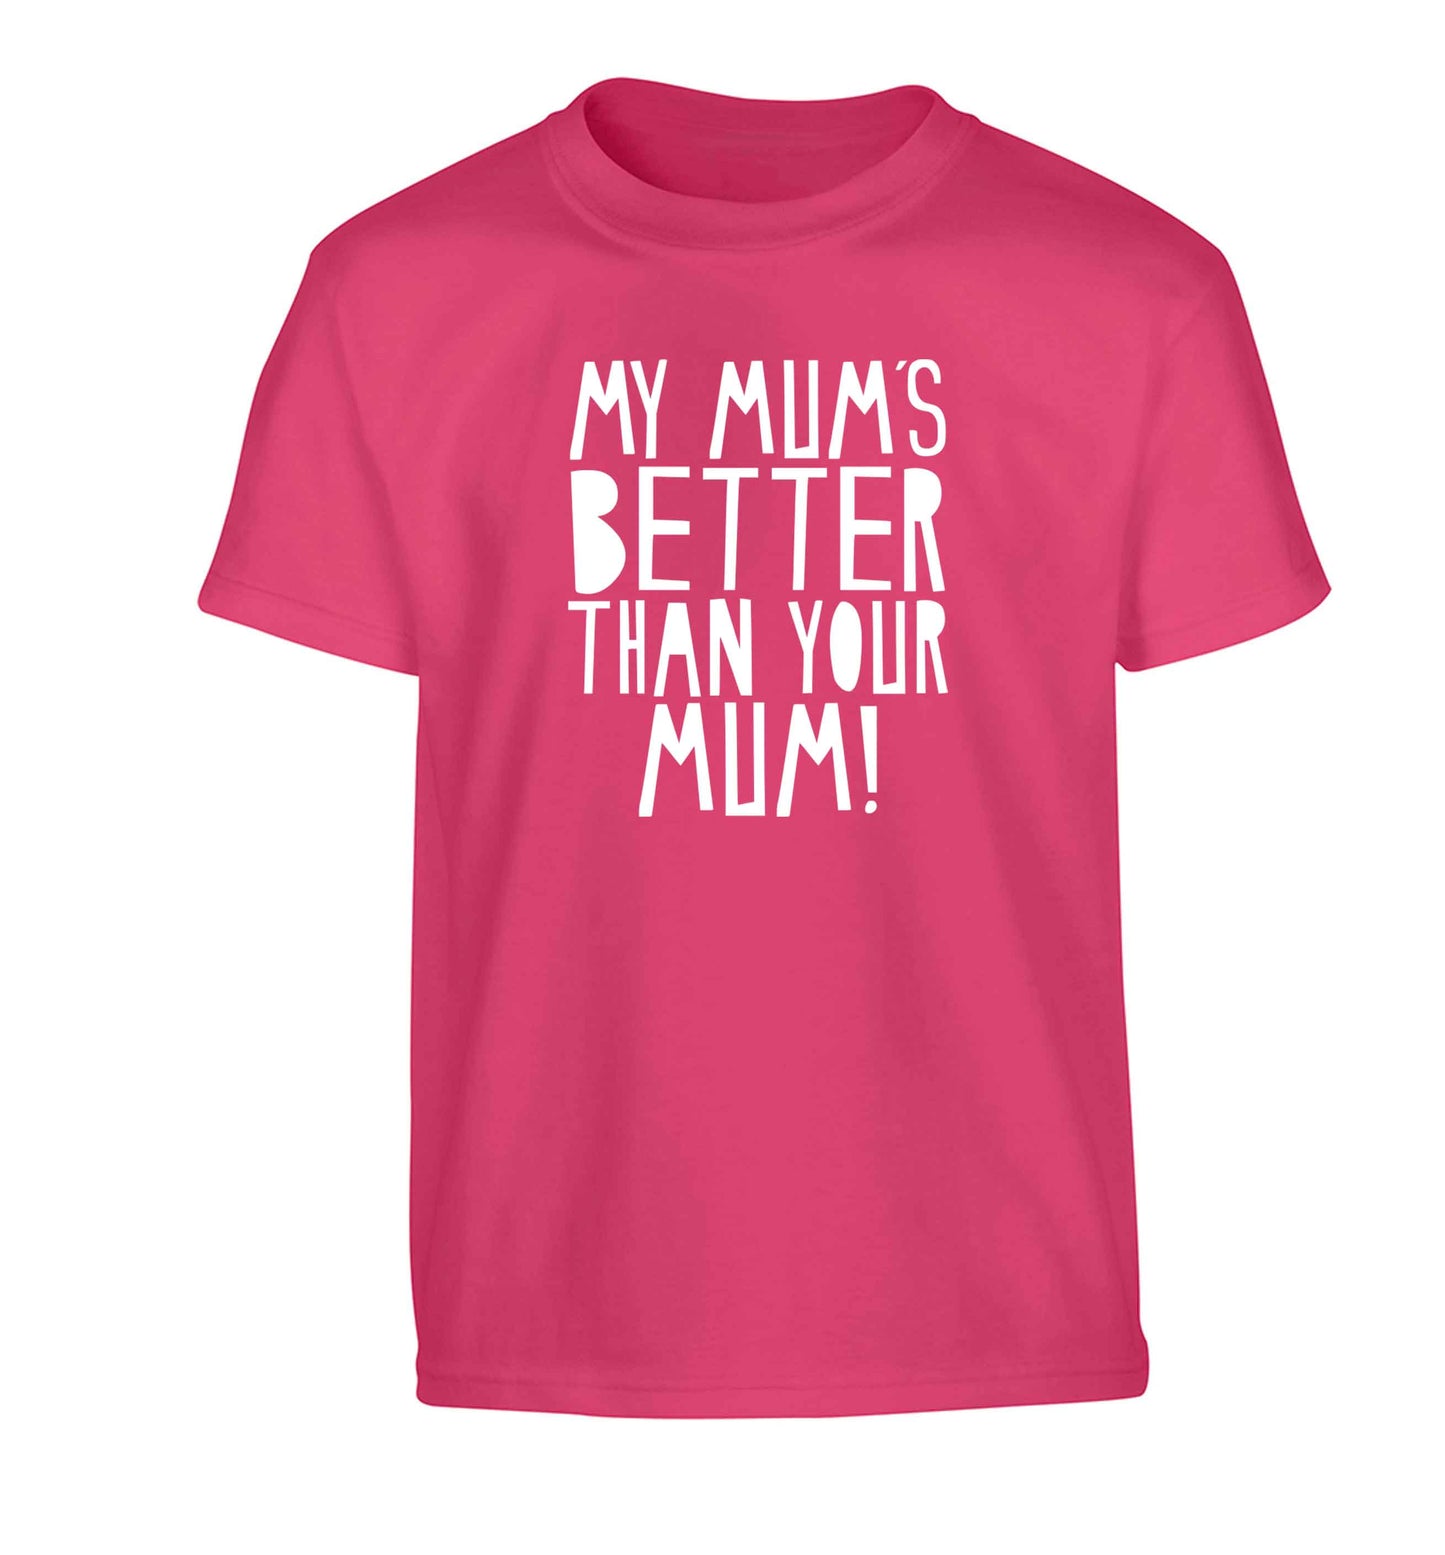 My mum's better than your mum Children's pink Tshirt 12-13 Years